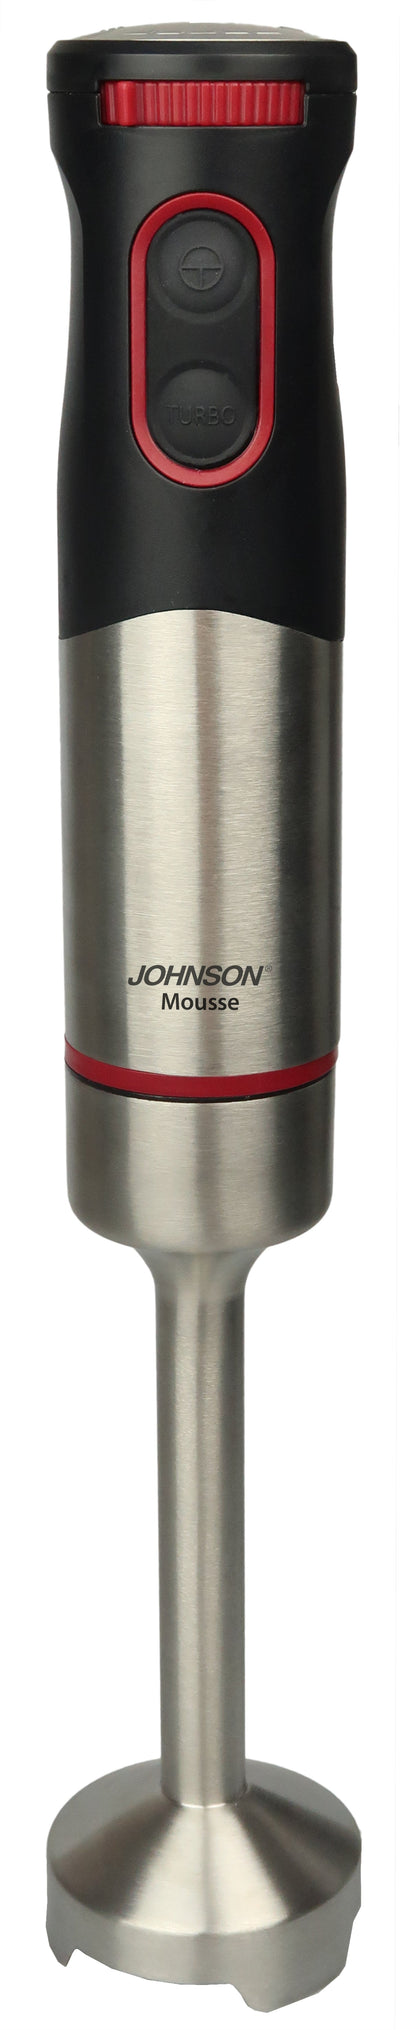 Frullatore a Immersione Johnson MOUSSE 700W Acciaio Inox Regolazione Velocità Turbo